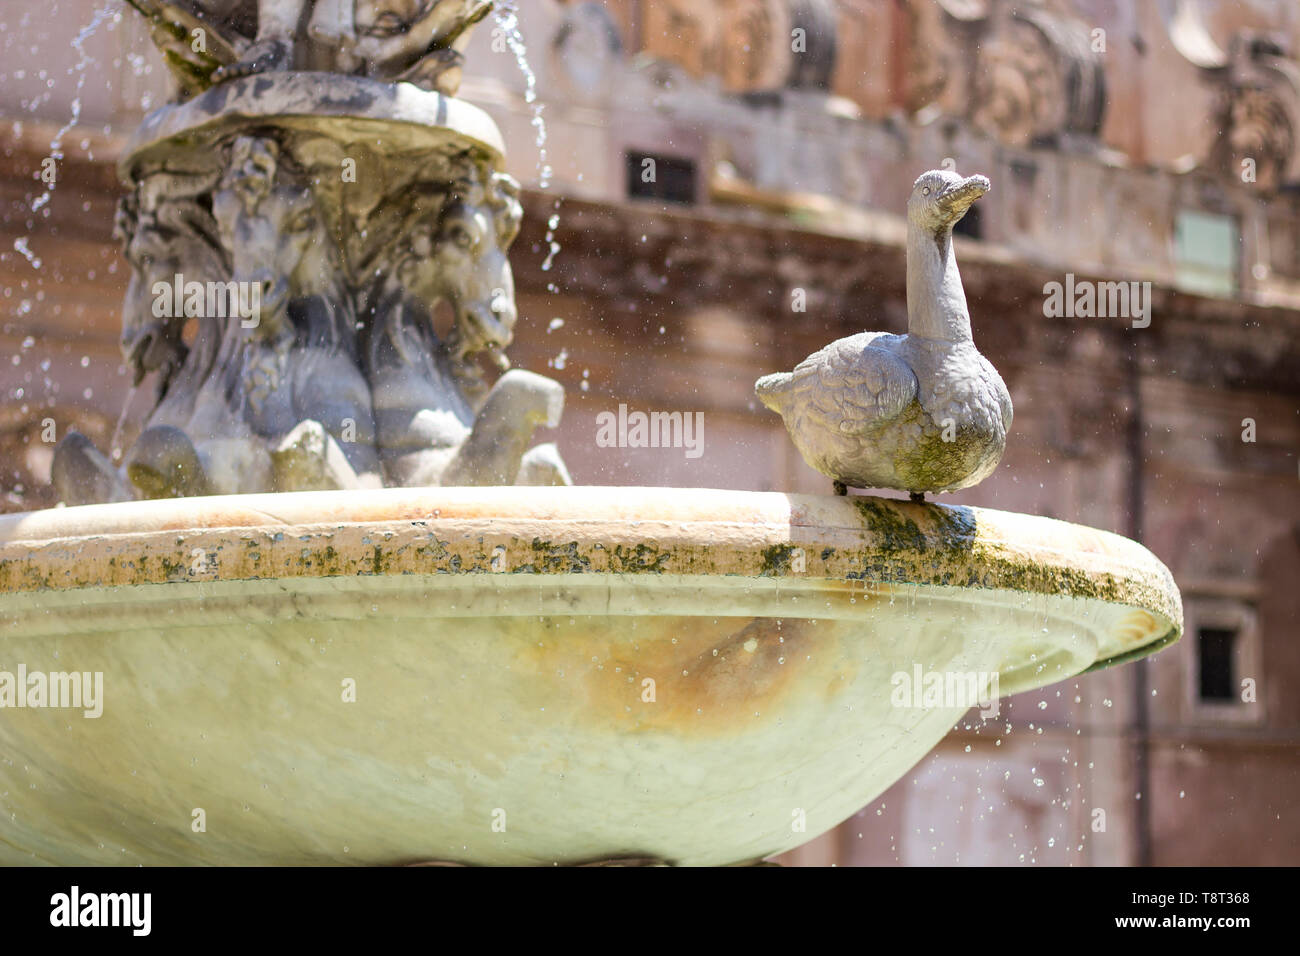 En ancienne fontaine prétorienne (Fontana Pretoria) sur la Piazza Pretoria à Palerme, Sicile, Italie Banque D'Images